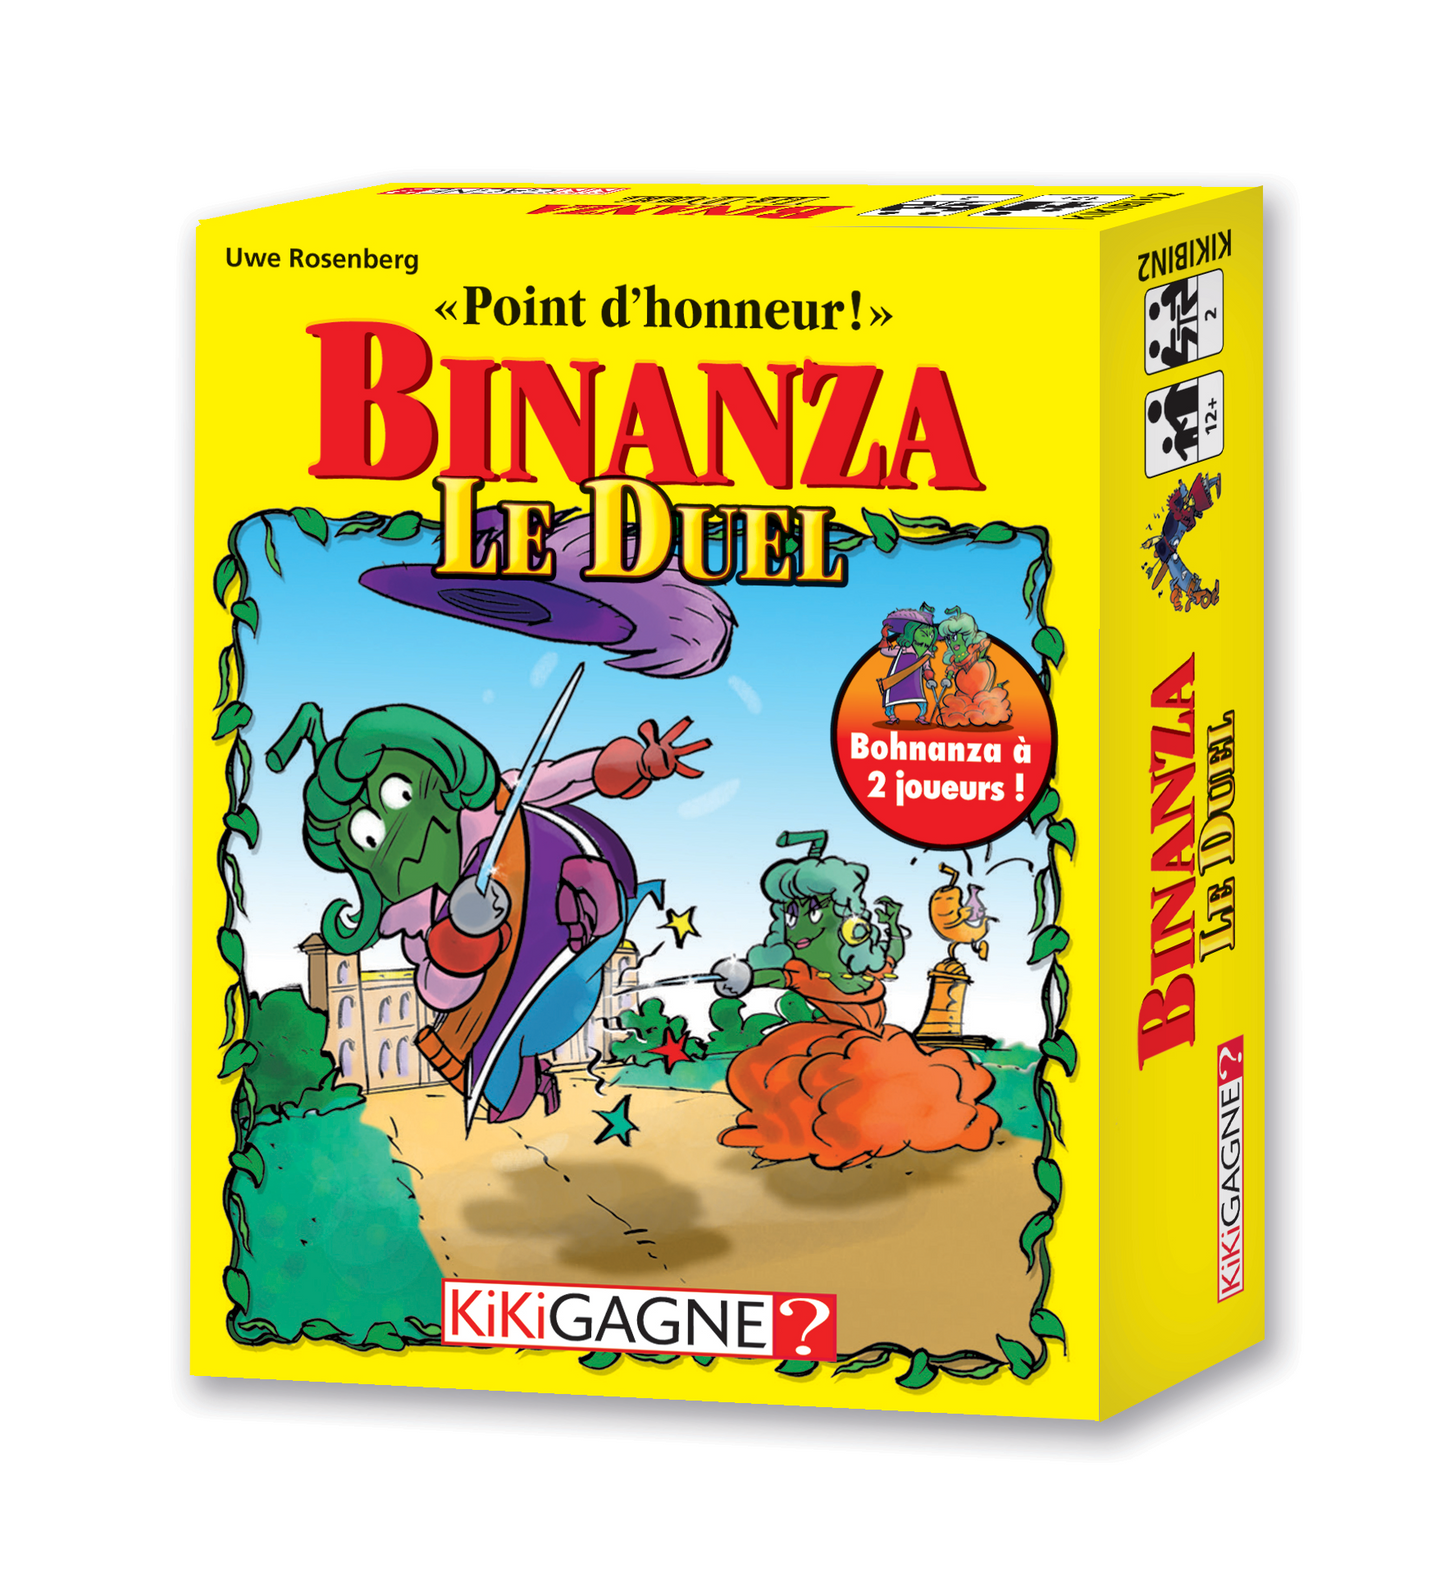 Binanza Duel version française